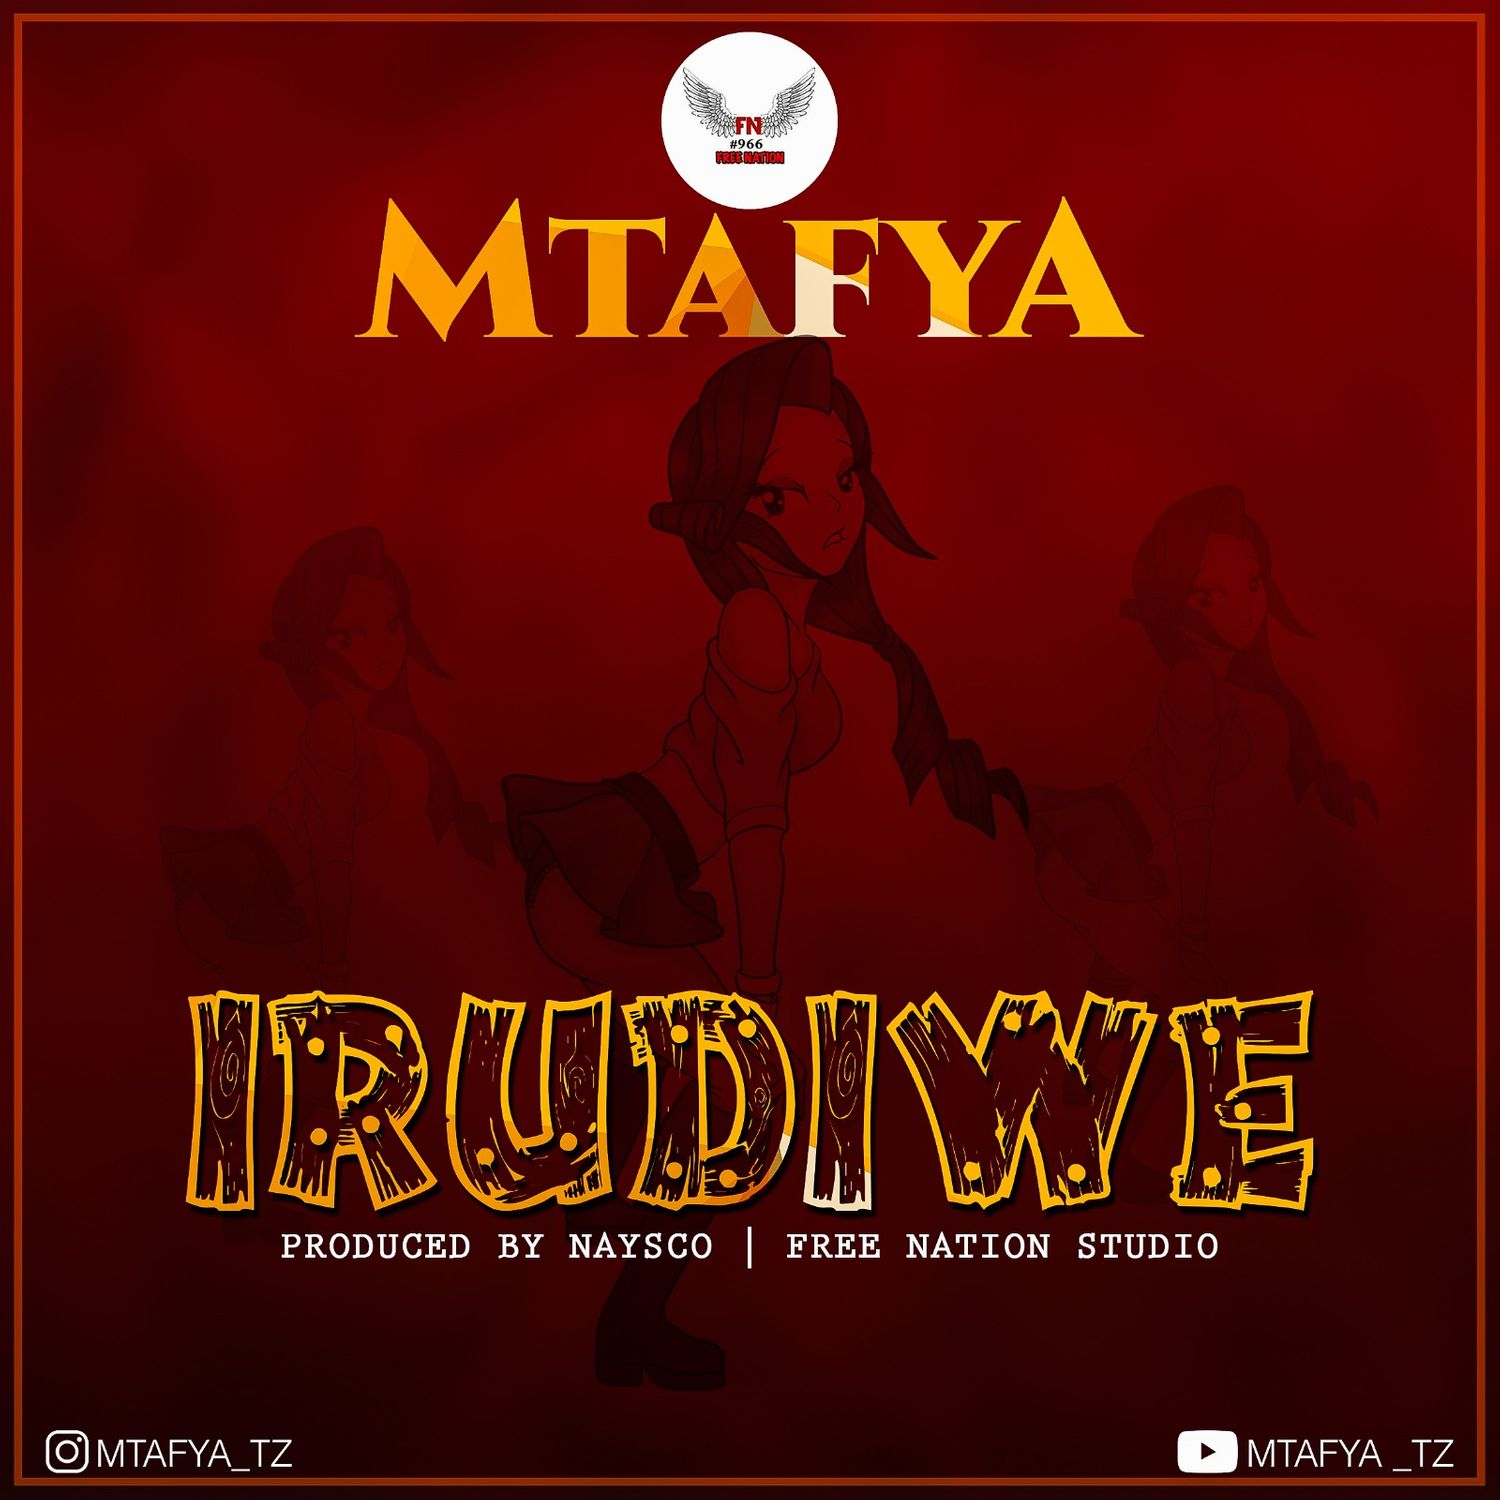 mtafya irudiwe - Bekaboy